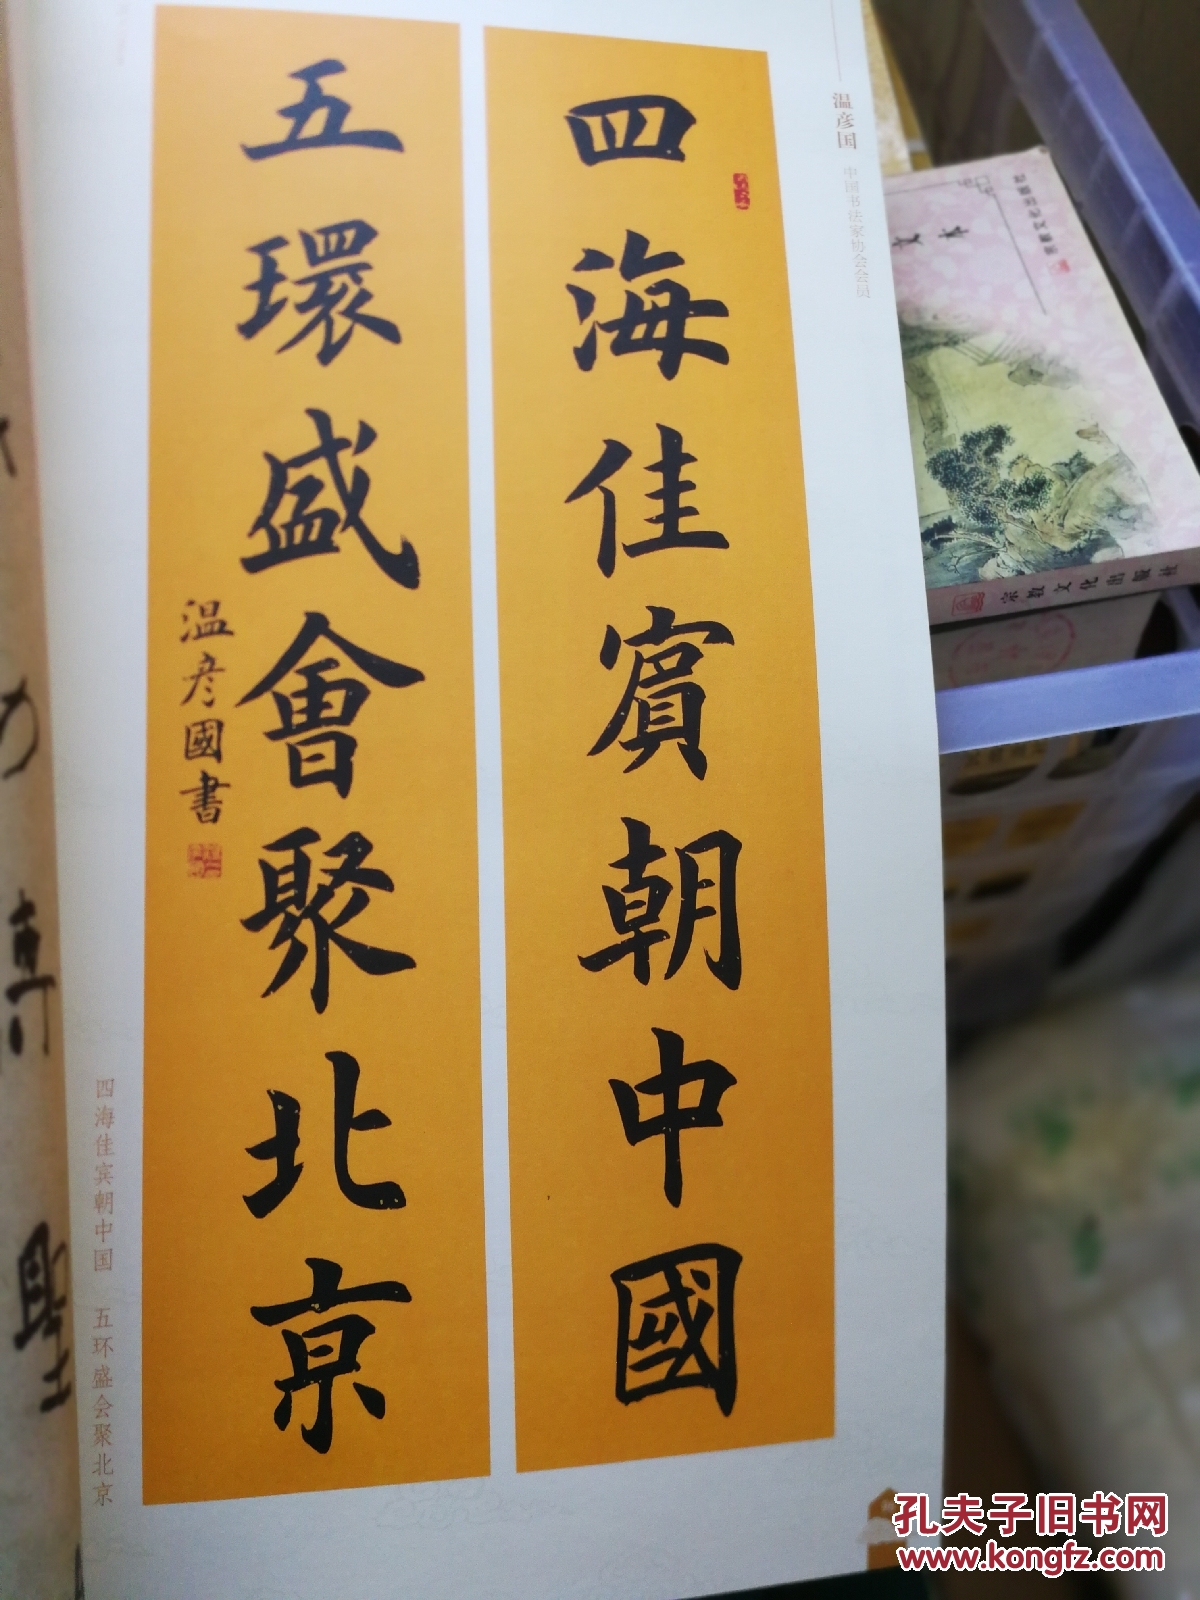 为人文奥运喝采北京西城区百幅楹联书法作品集